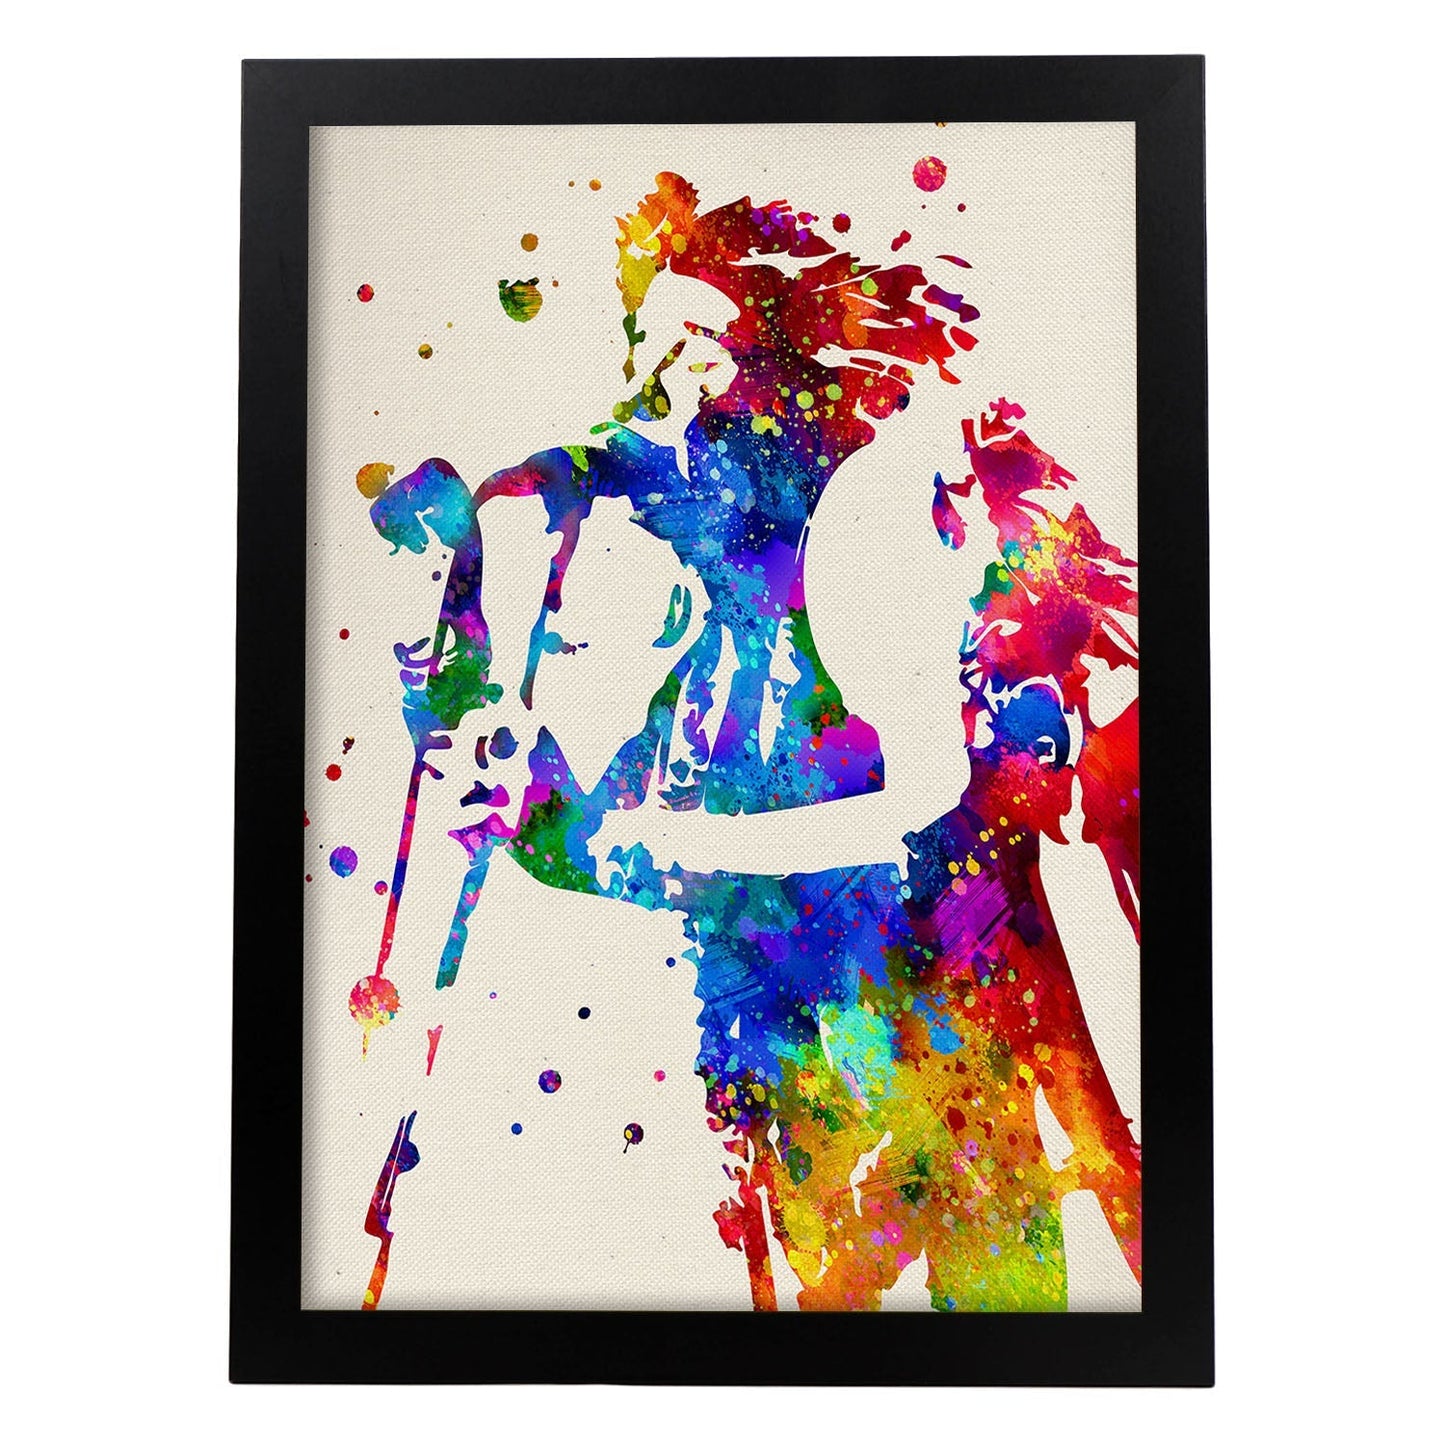 Poster imagen de Janis Joplin. Posters con diseño acuarela de famosos, actores, músicos-Artwork-Nacnic-A4-Marco Negro-Nacnic Estudio SL